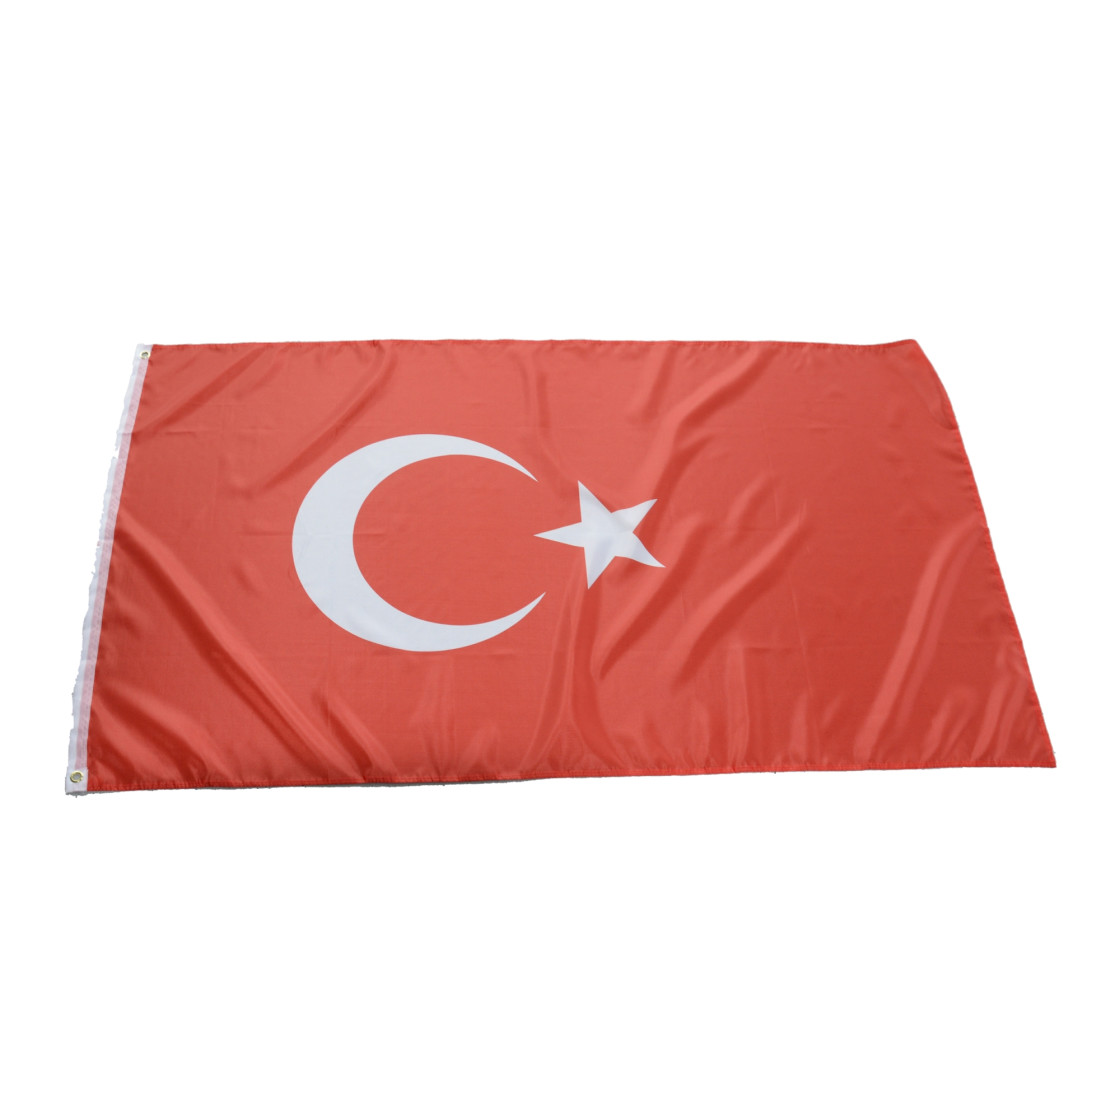 Flagge Fahne Türkei 90 x 150 cm zum Hissen